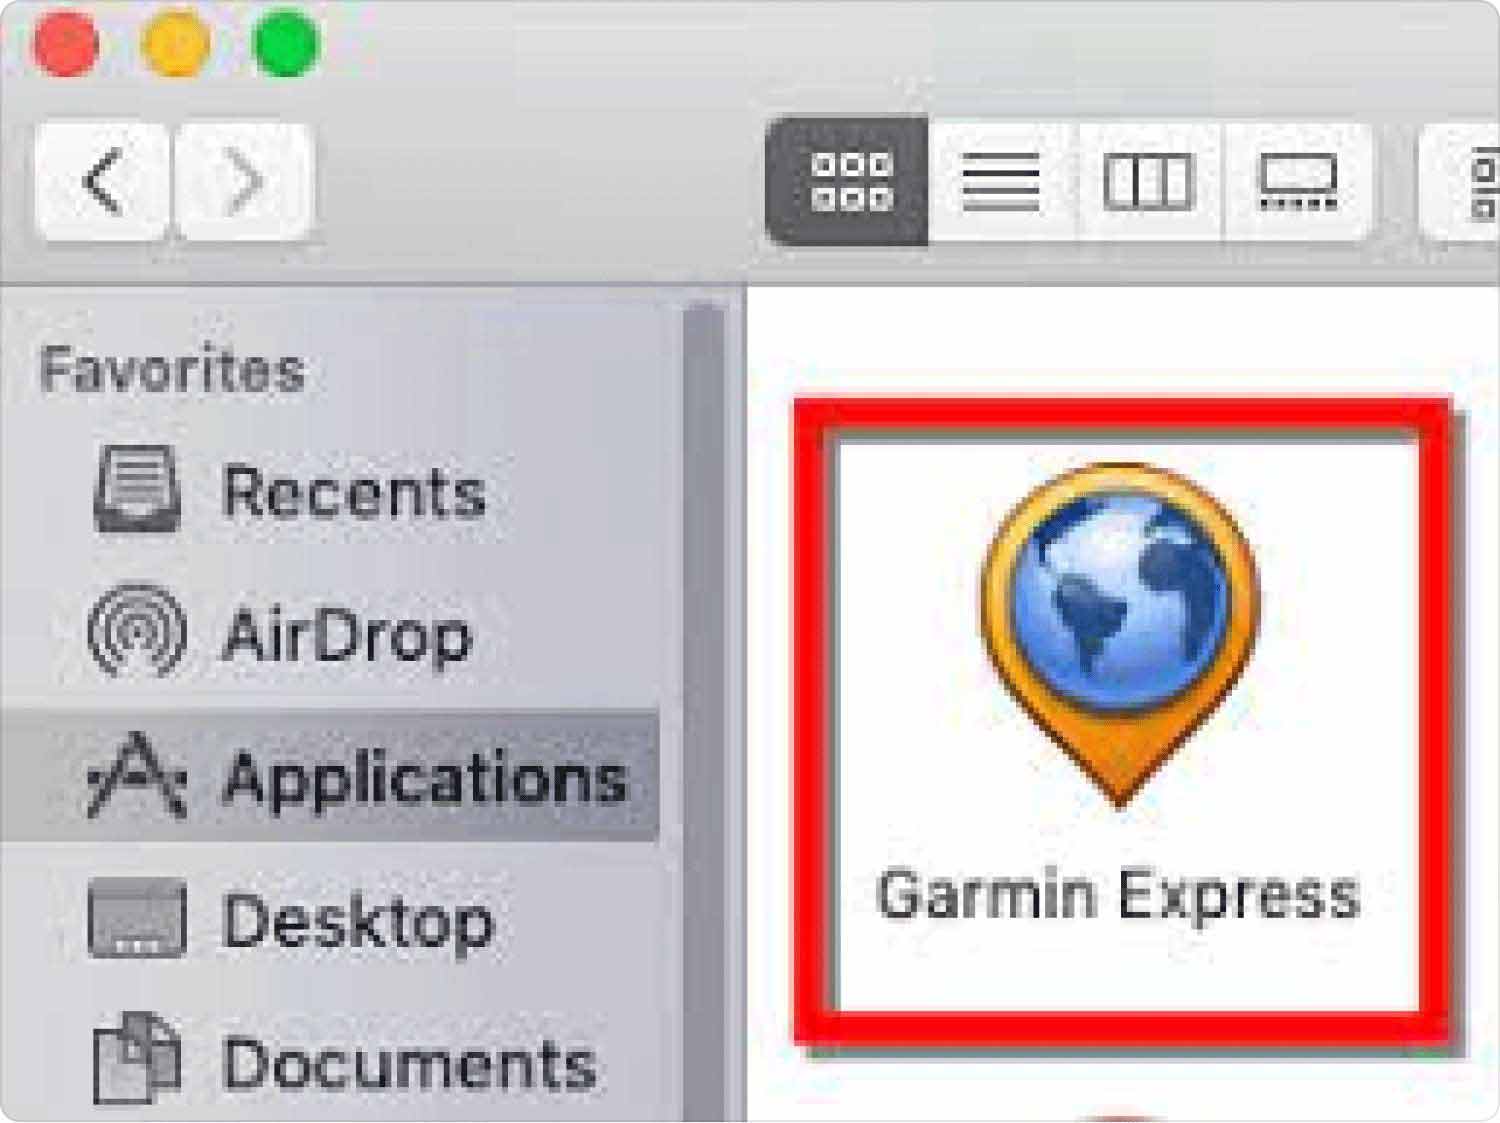 Verwijder Garmin Express via de handmatige optie